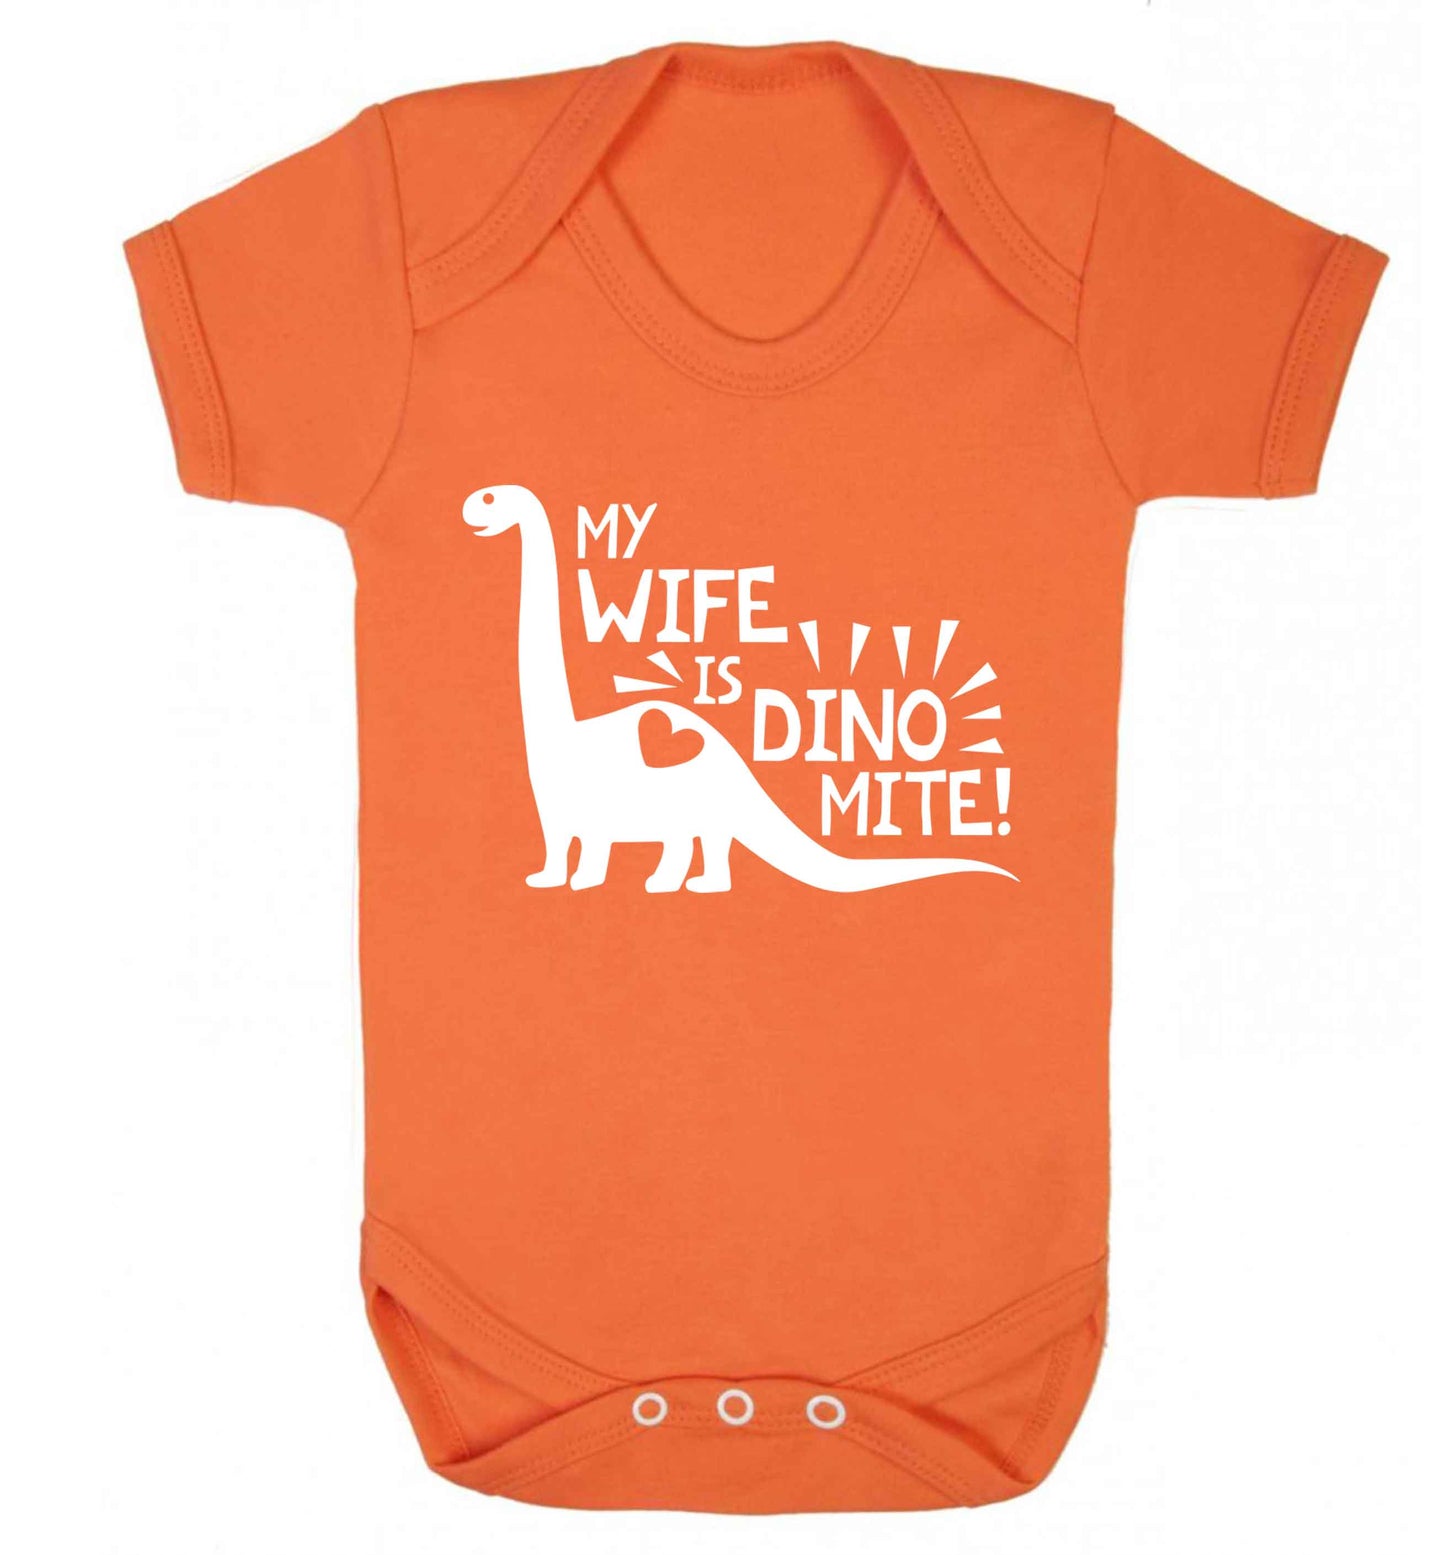 My wife is dinomite! Baby Vest orange 18-24 months